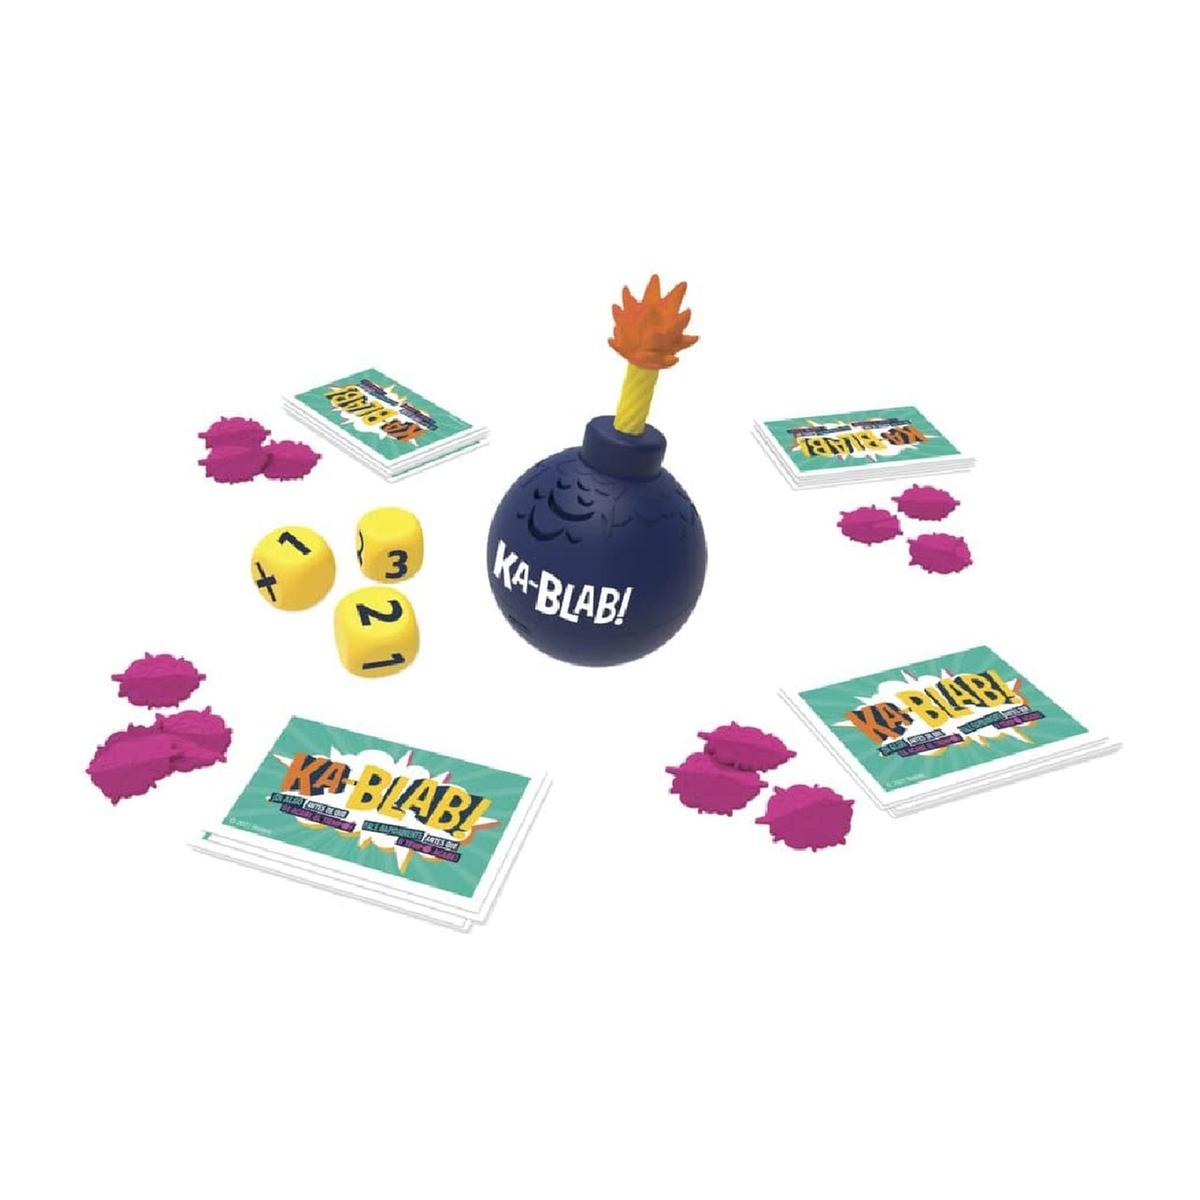 Ka-Blab! - Juego de mesa | Juegos Familiares | Toys"R"Us España